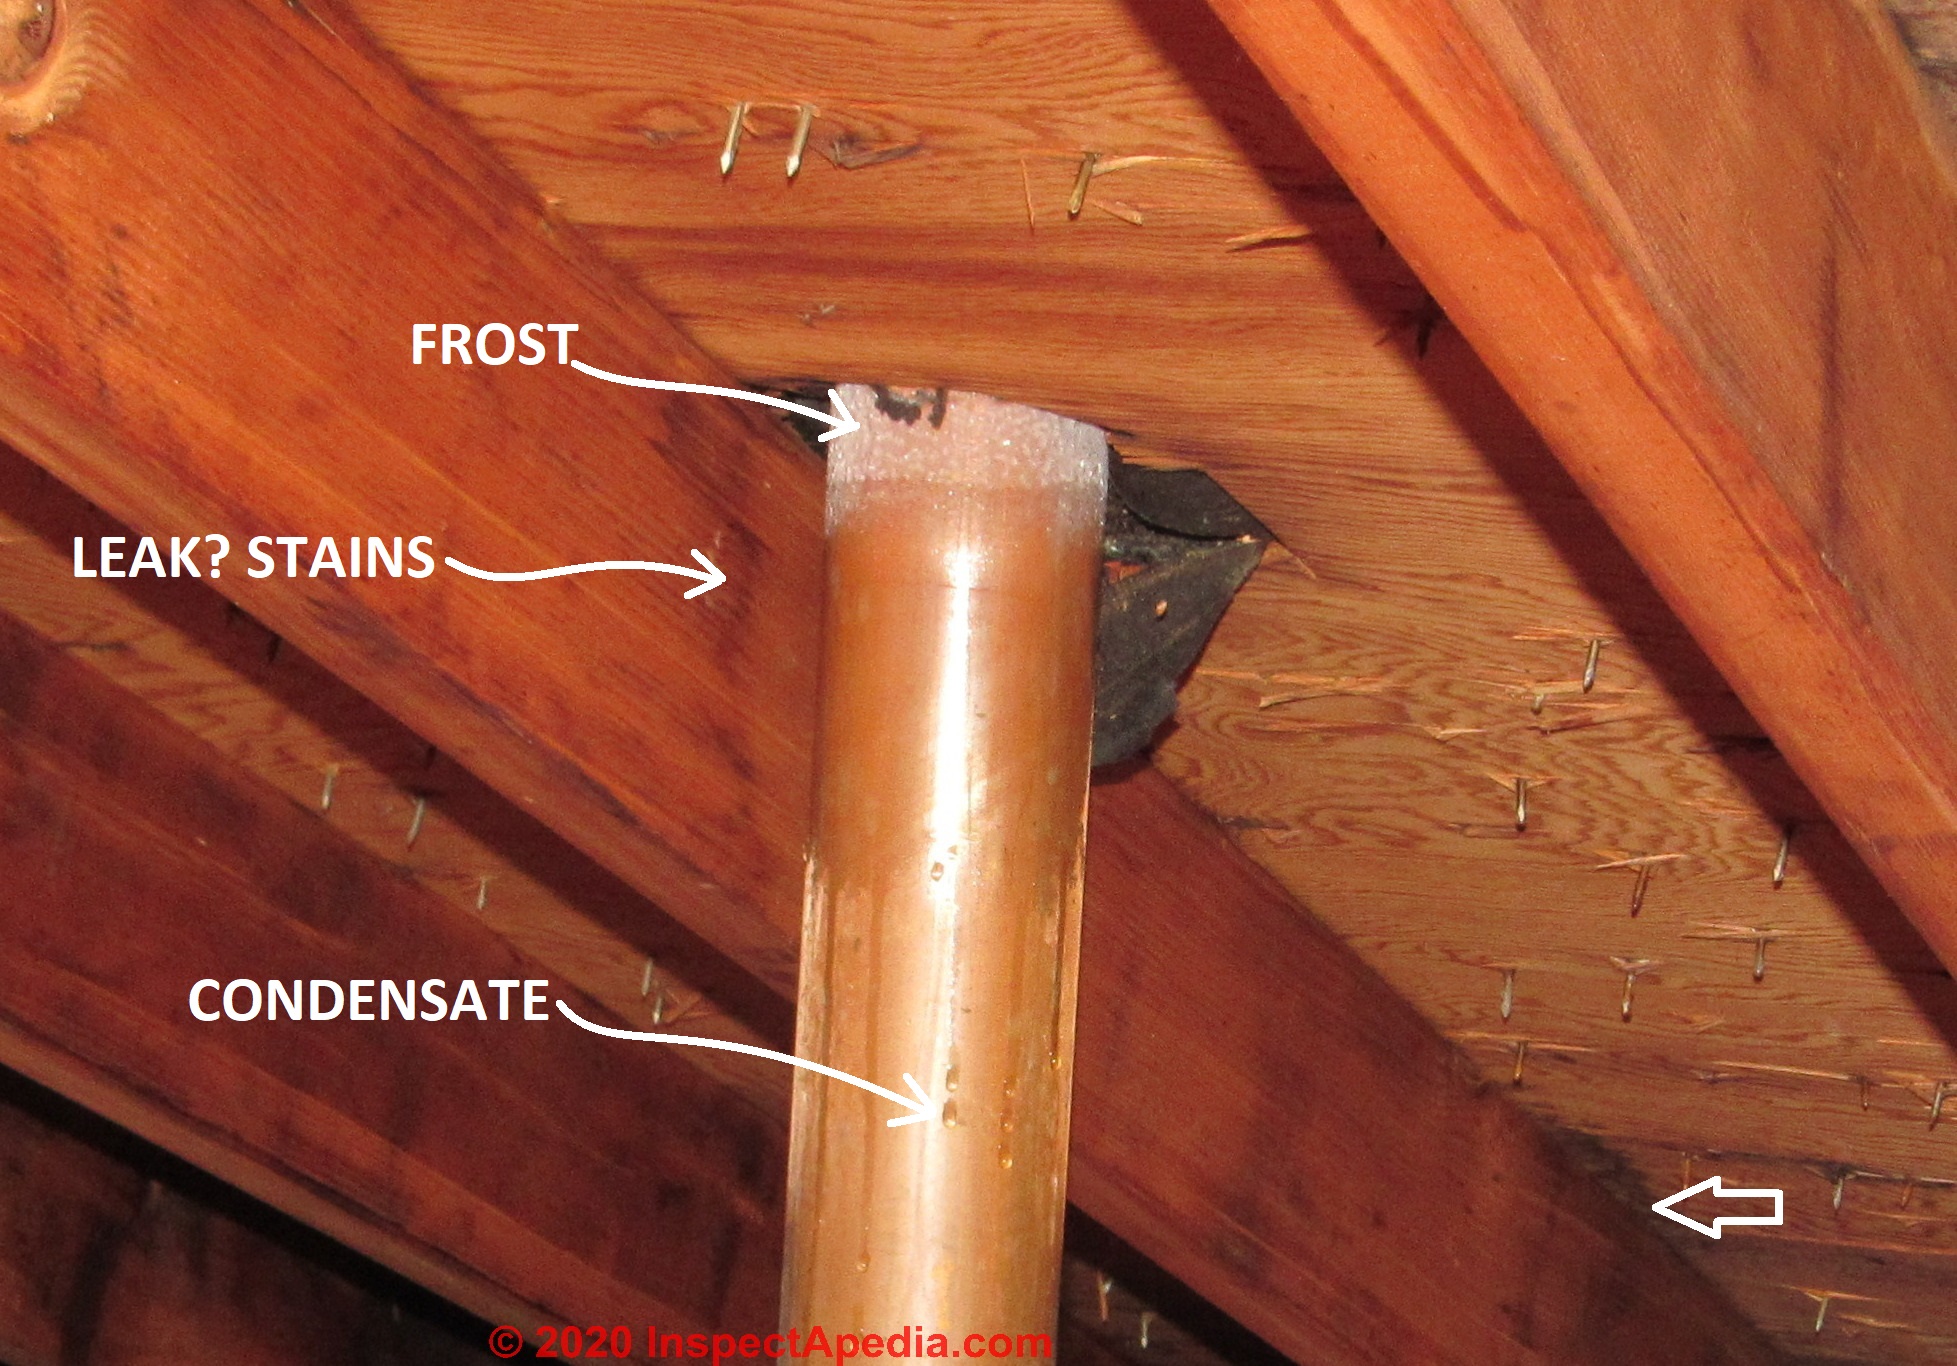 Rooftop Plumbing Vent Installation Best-practices details avoid